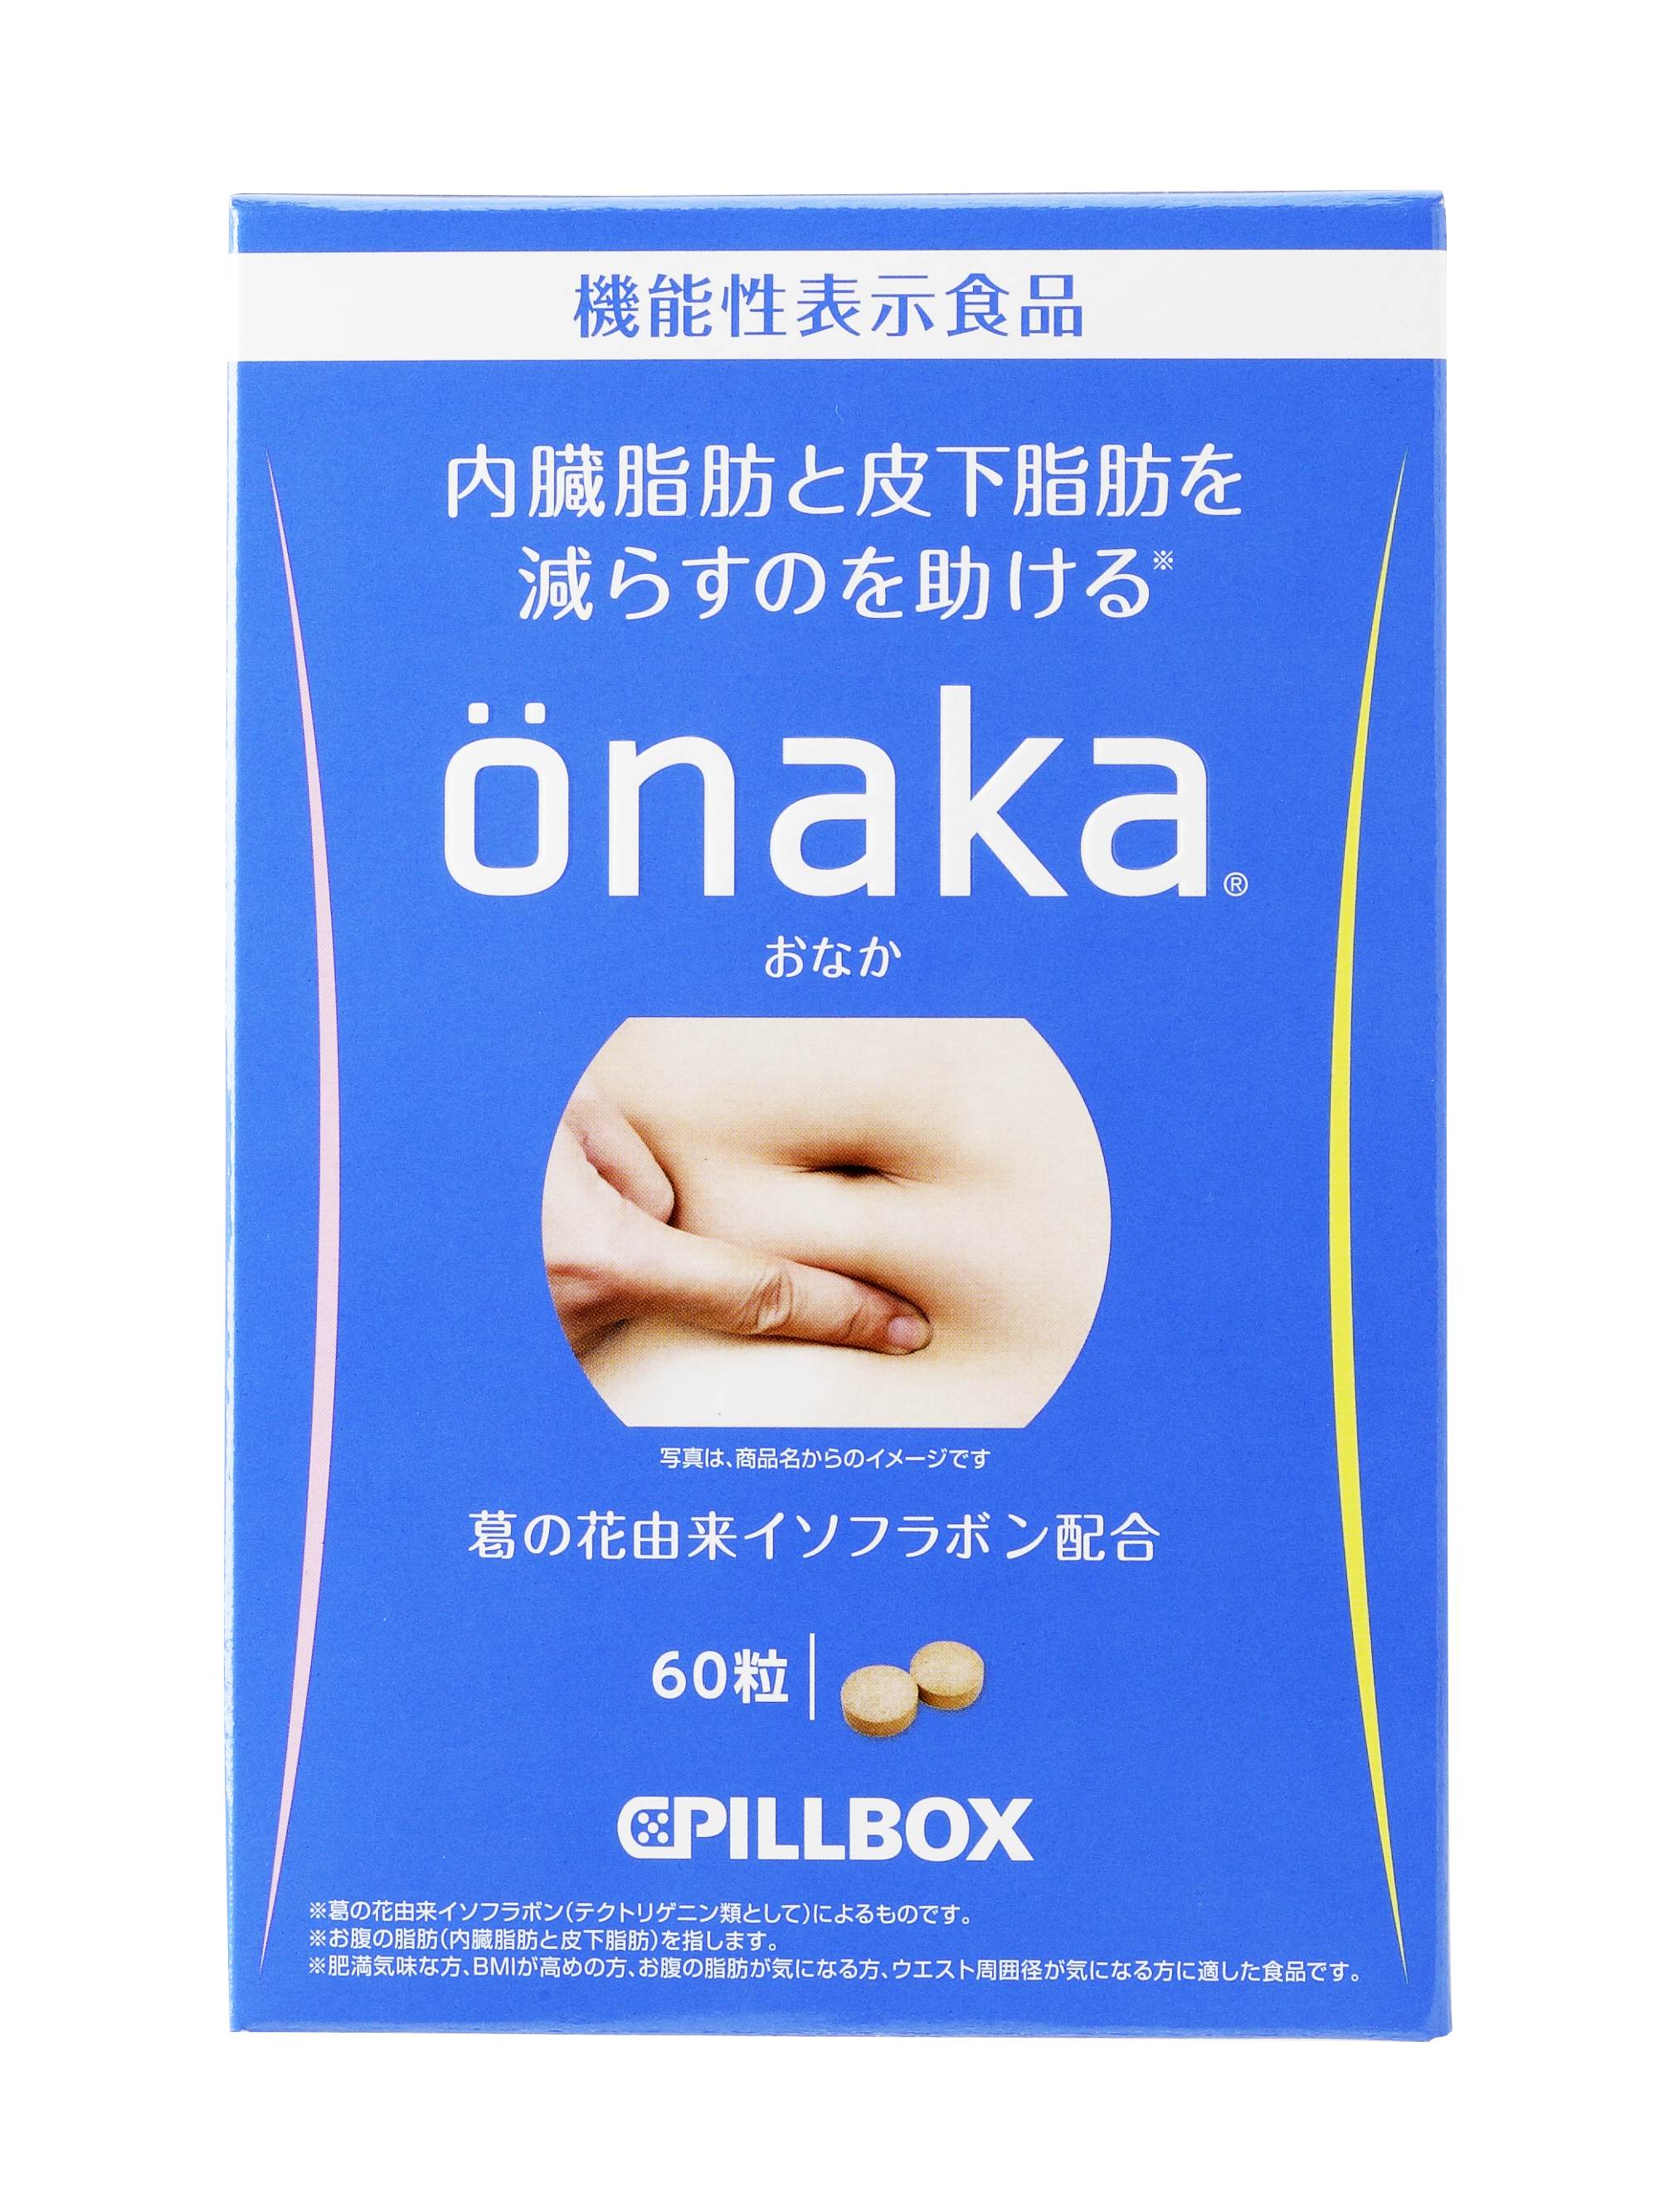 Onaka